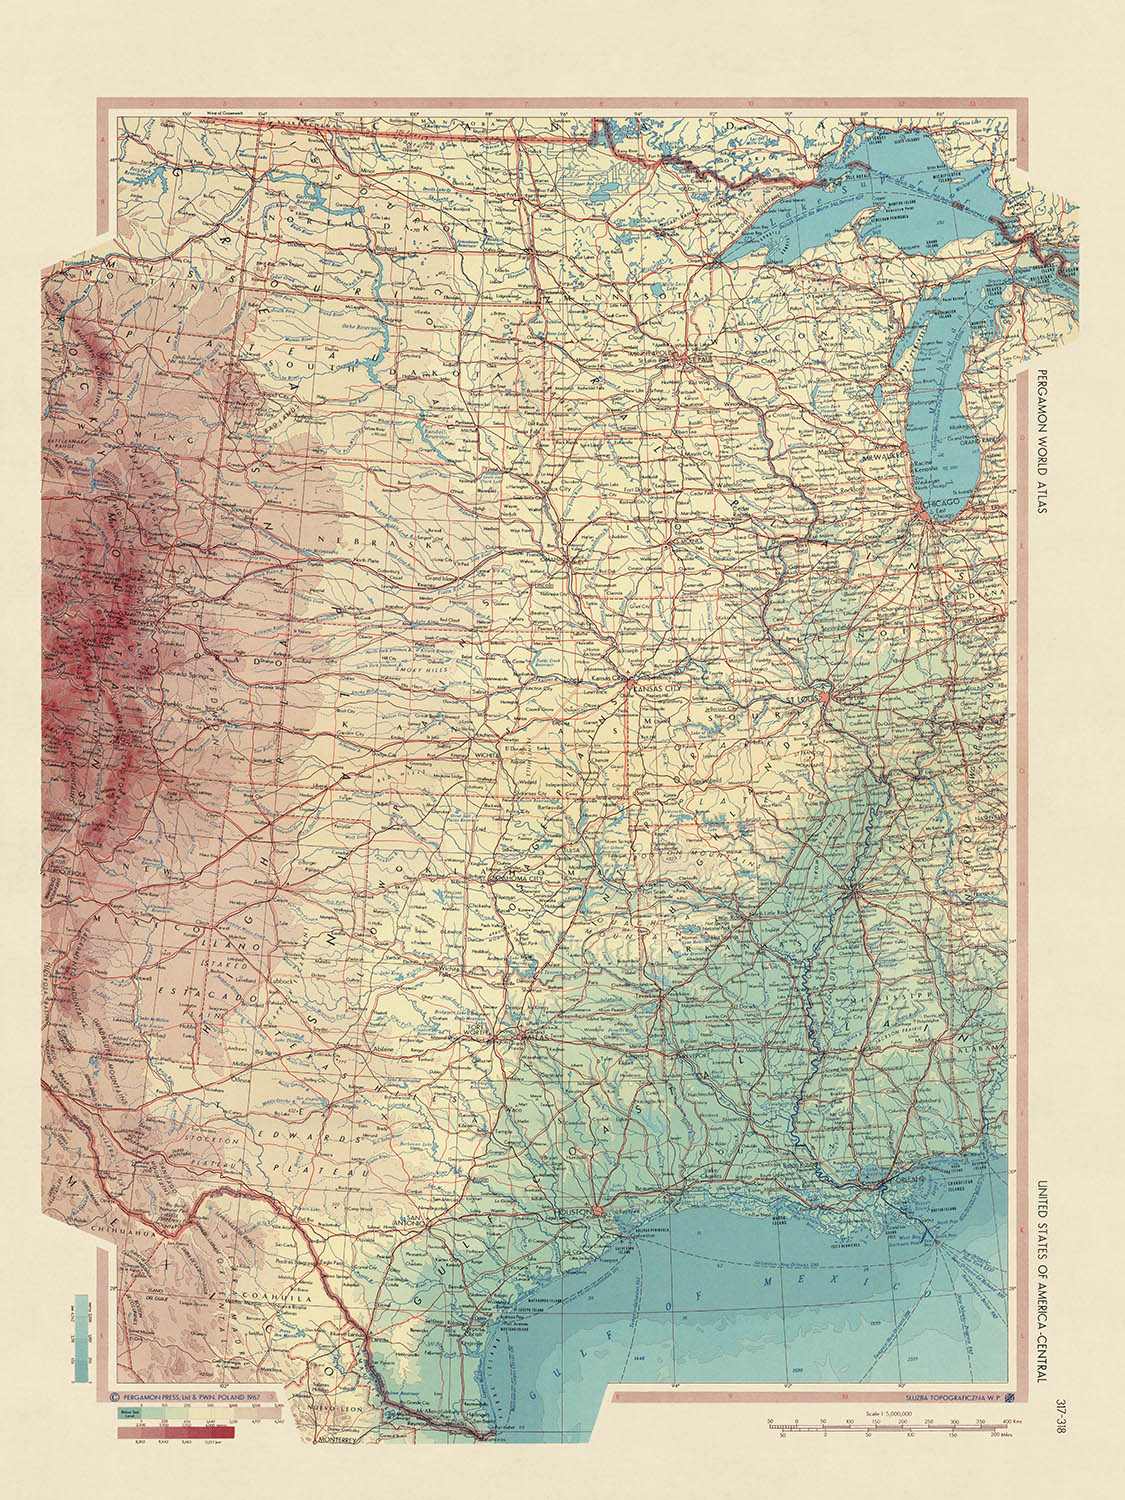 Alte Karte der zentralen USA vom polnischen Topographiedienst der Armee, 1967: Chicago, New Orleans, Rocky Mountains, Mississippi River, Grand Canyon